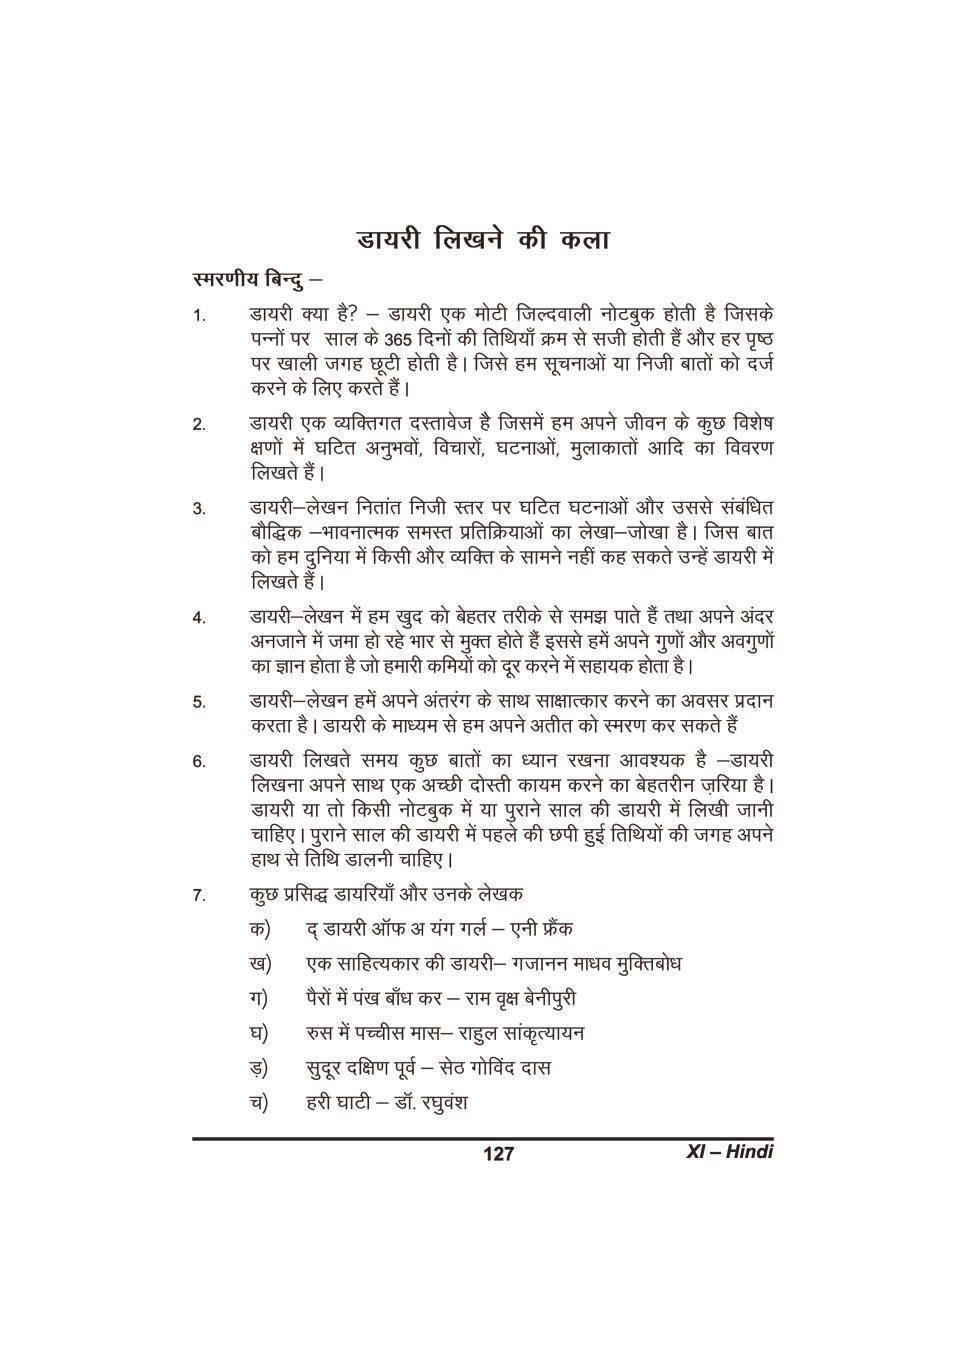 कक्षा 11 हिंदी के नोट्स - डायरी लिखने की कला - Page 1